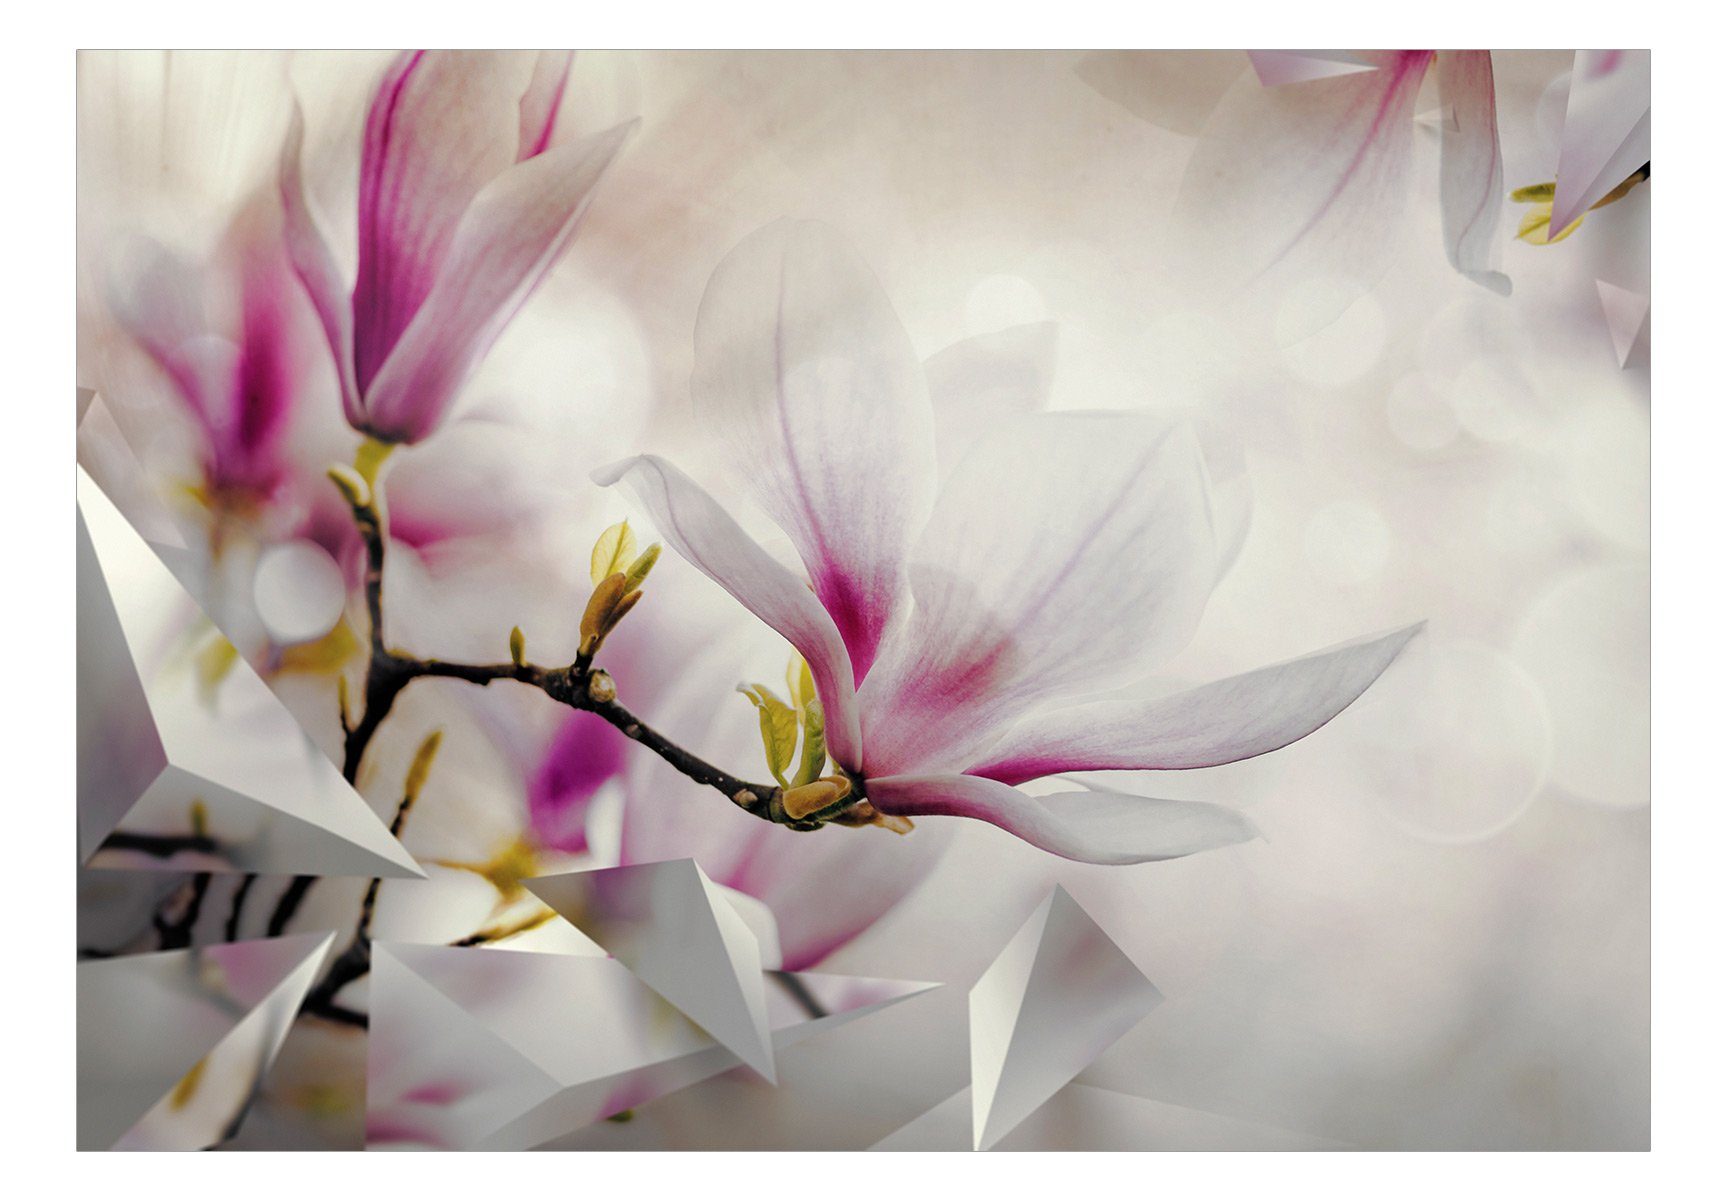 KUNSTLOFT Vliestapete Subtle Magnolias - Tapete Design Variant 0.98x0.7 Third matt, halb-matt, m, lichtbeständige